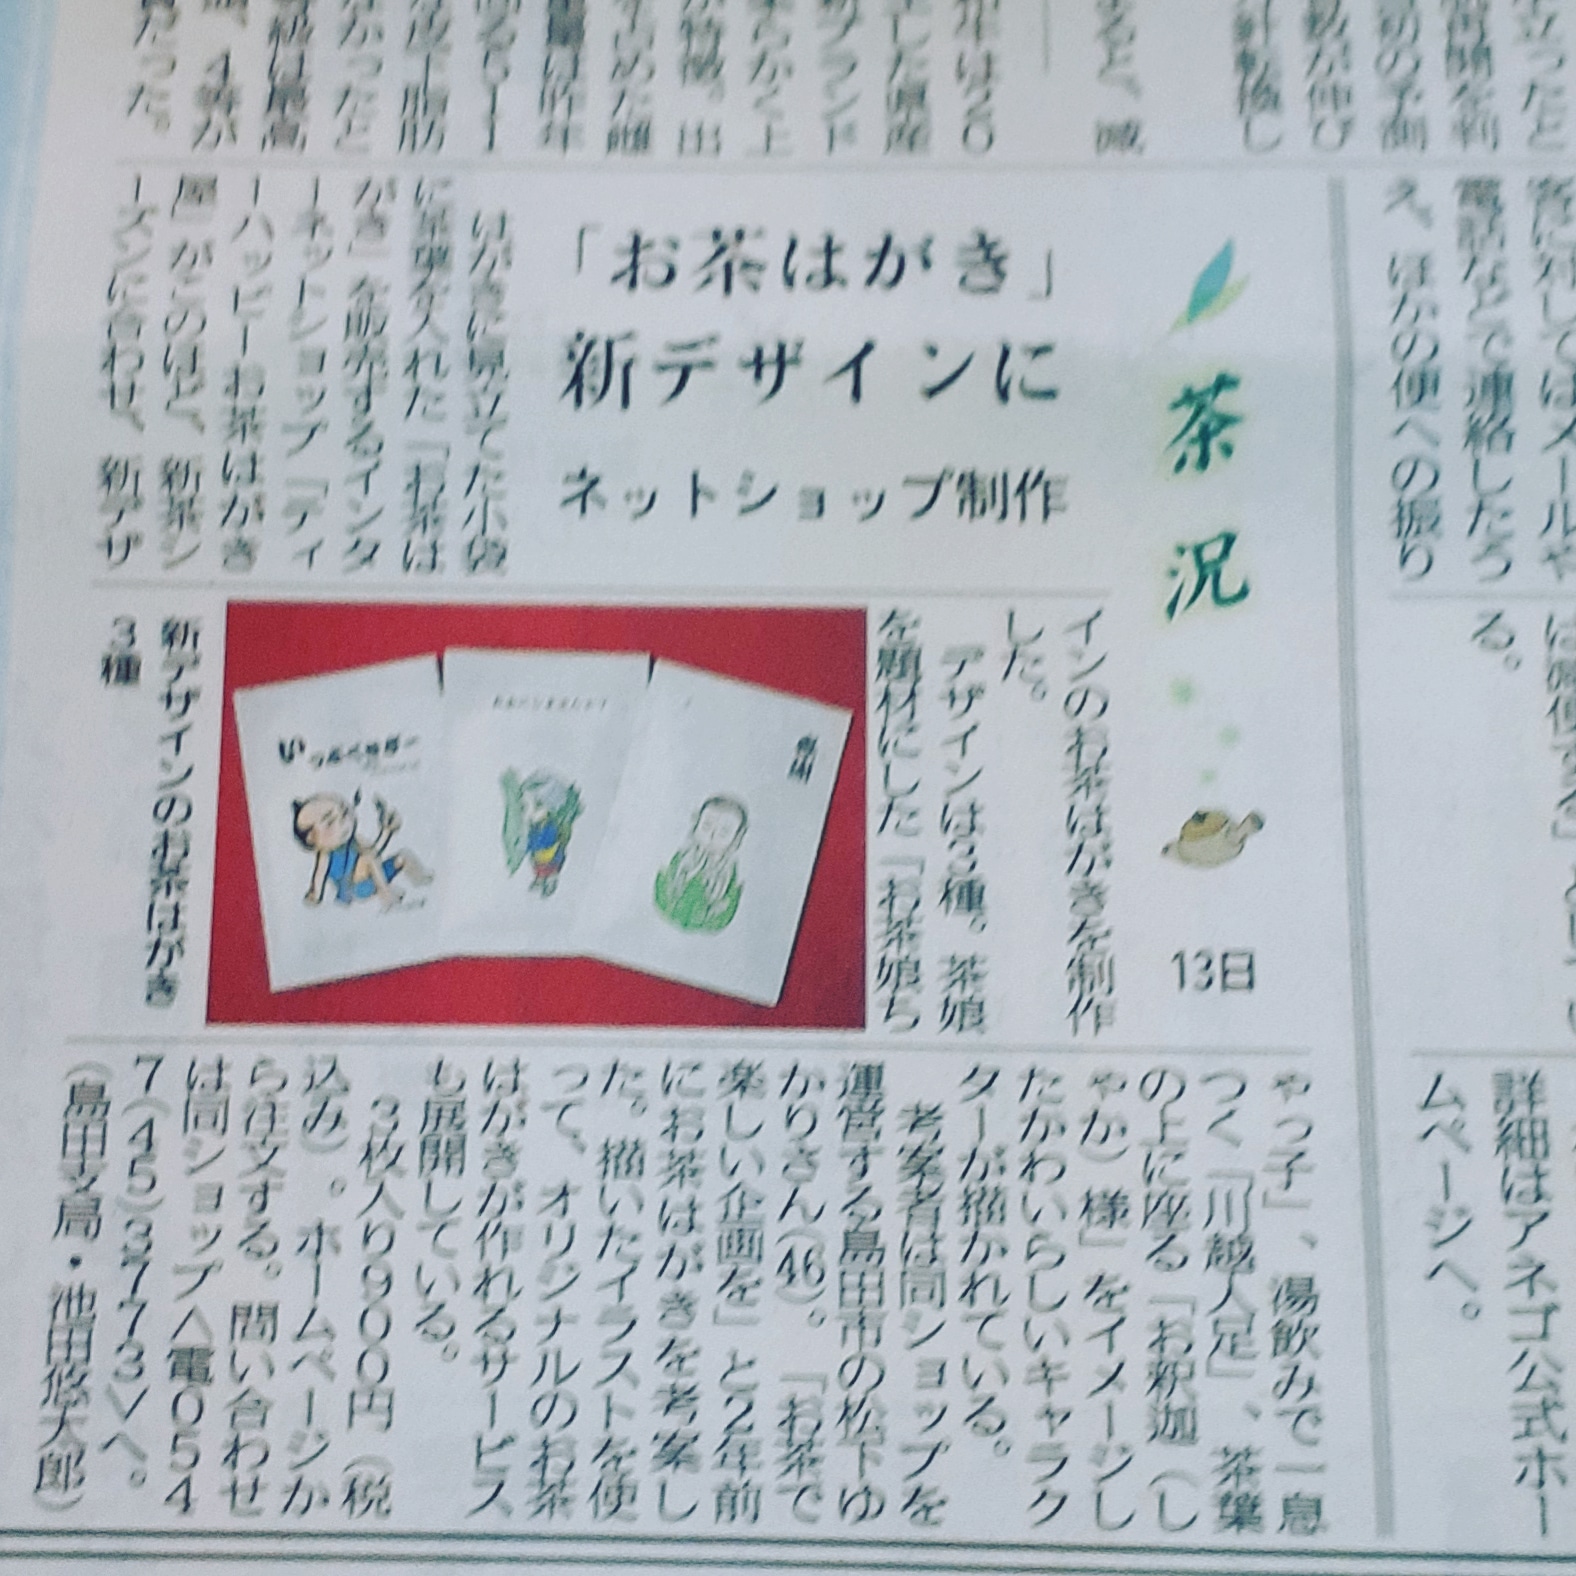 お茶はがきが静岡新聞に掲載